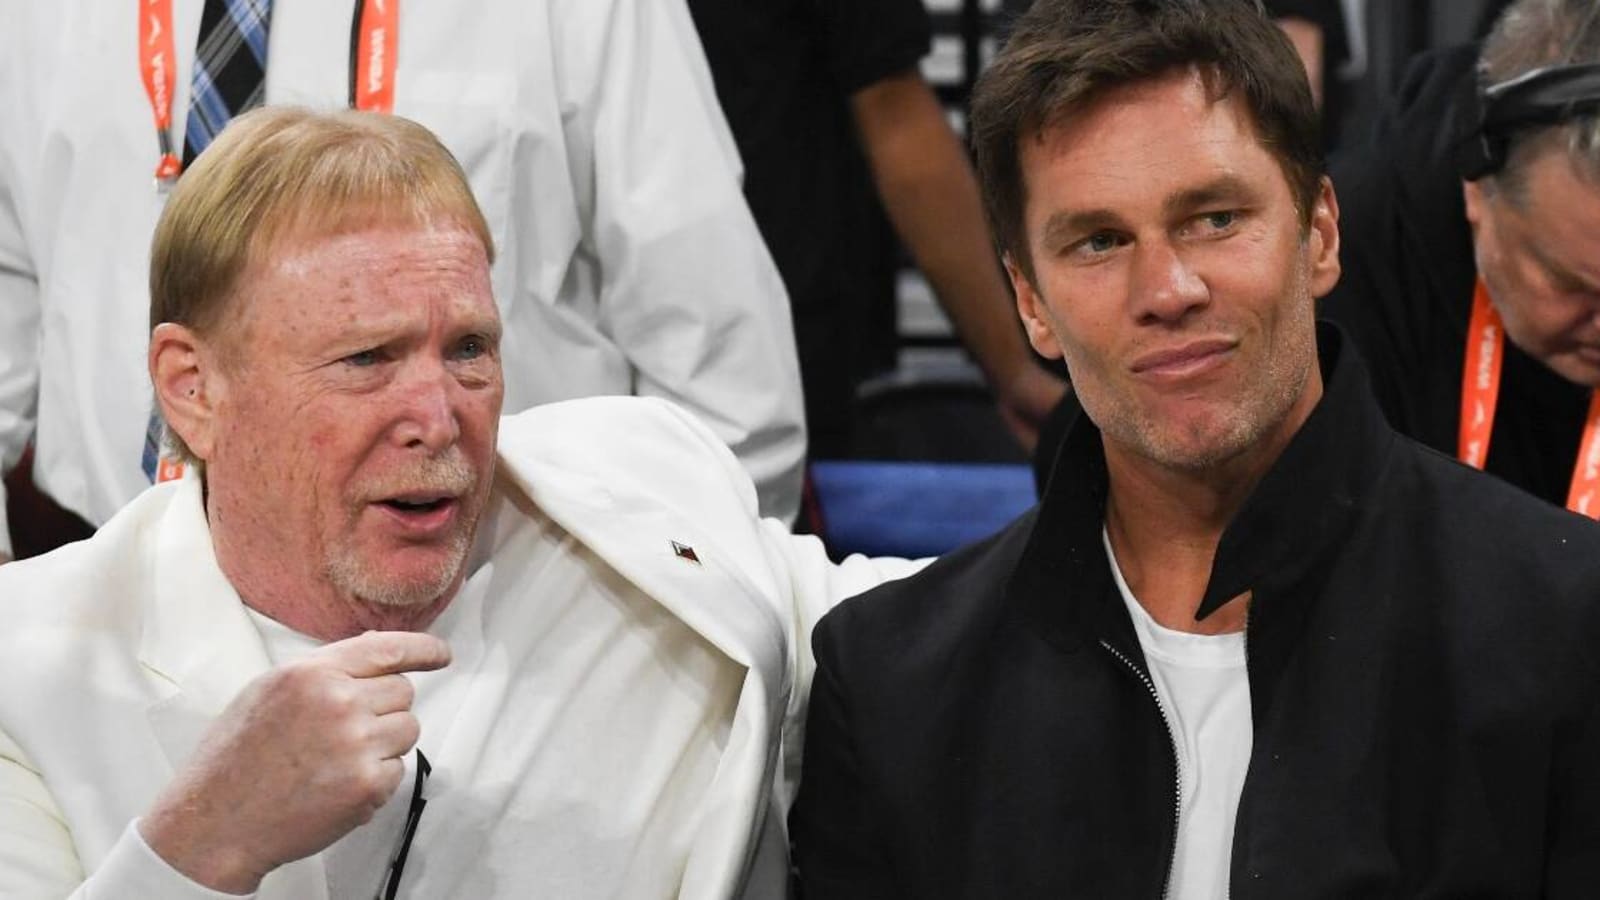 Tom Brady bid to buy piece Las Vegas Raiders faces more delays